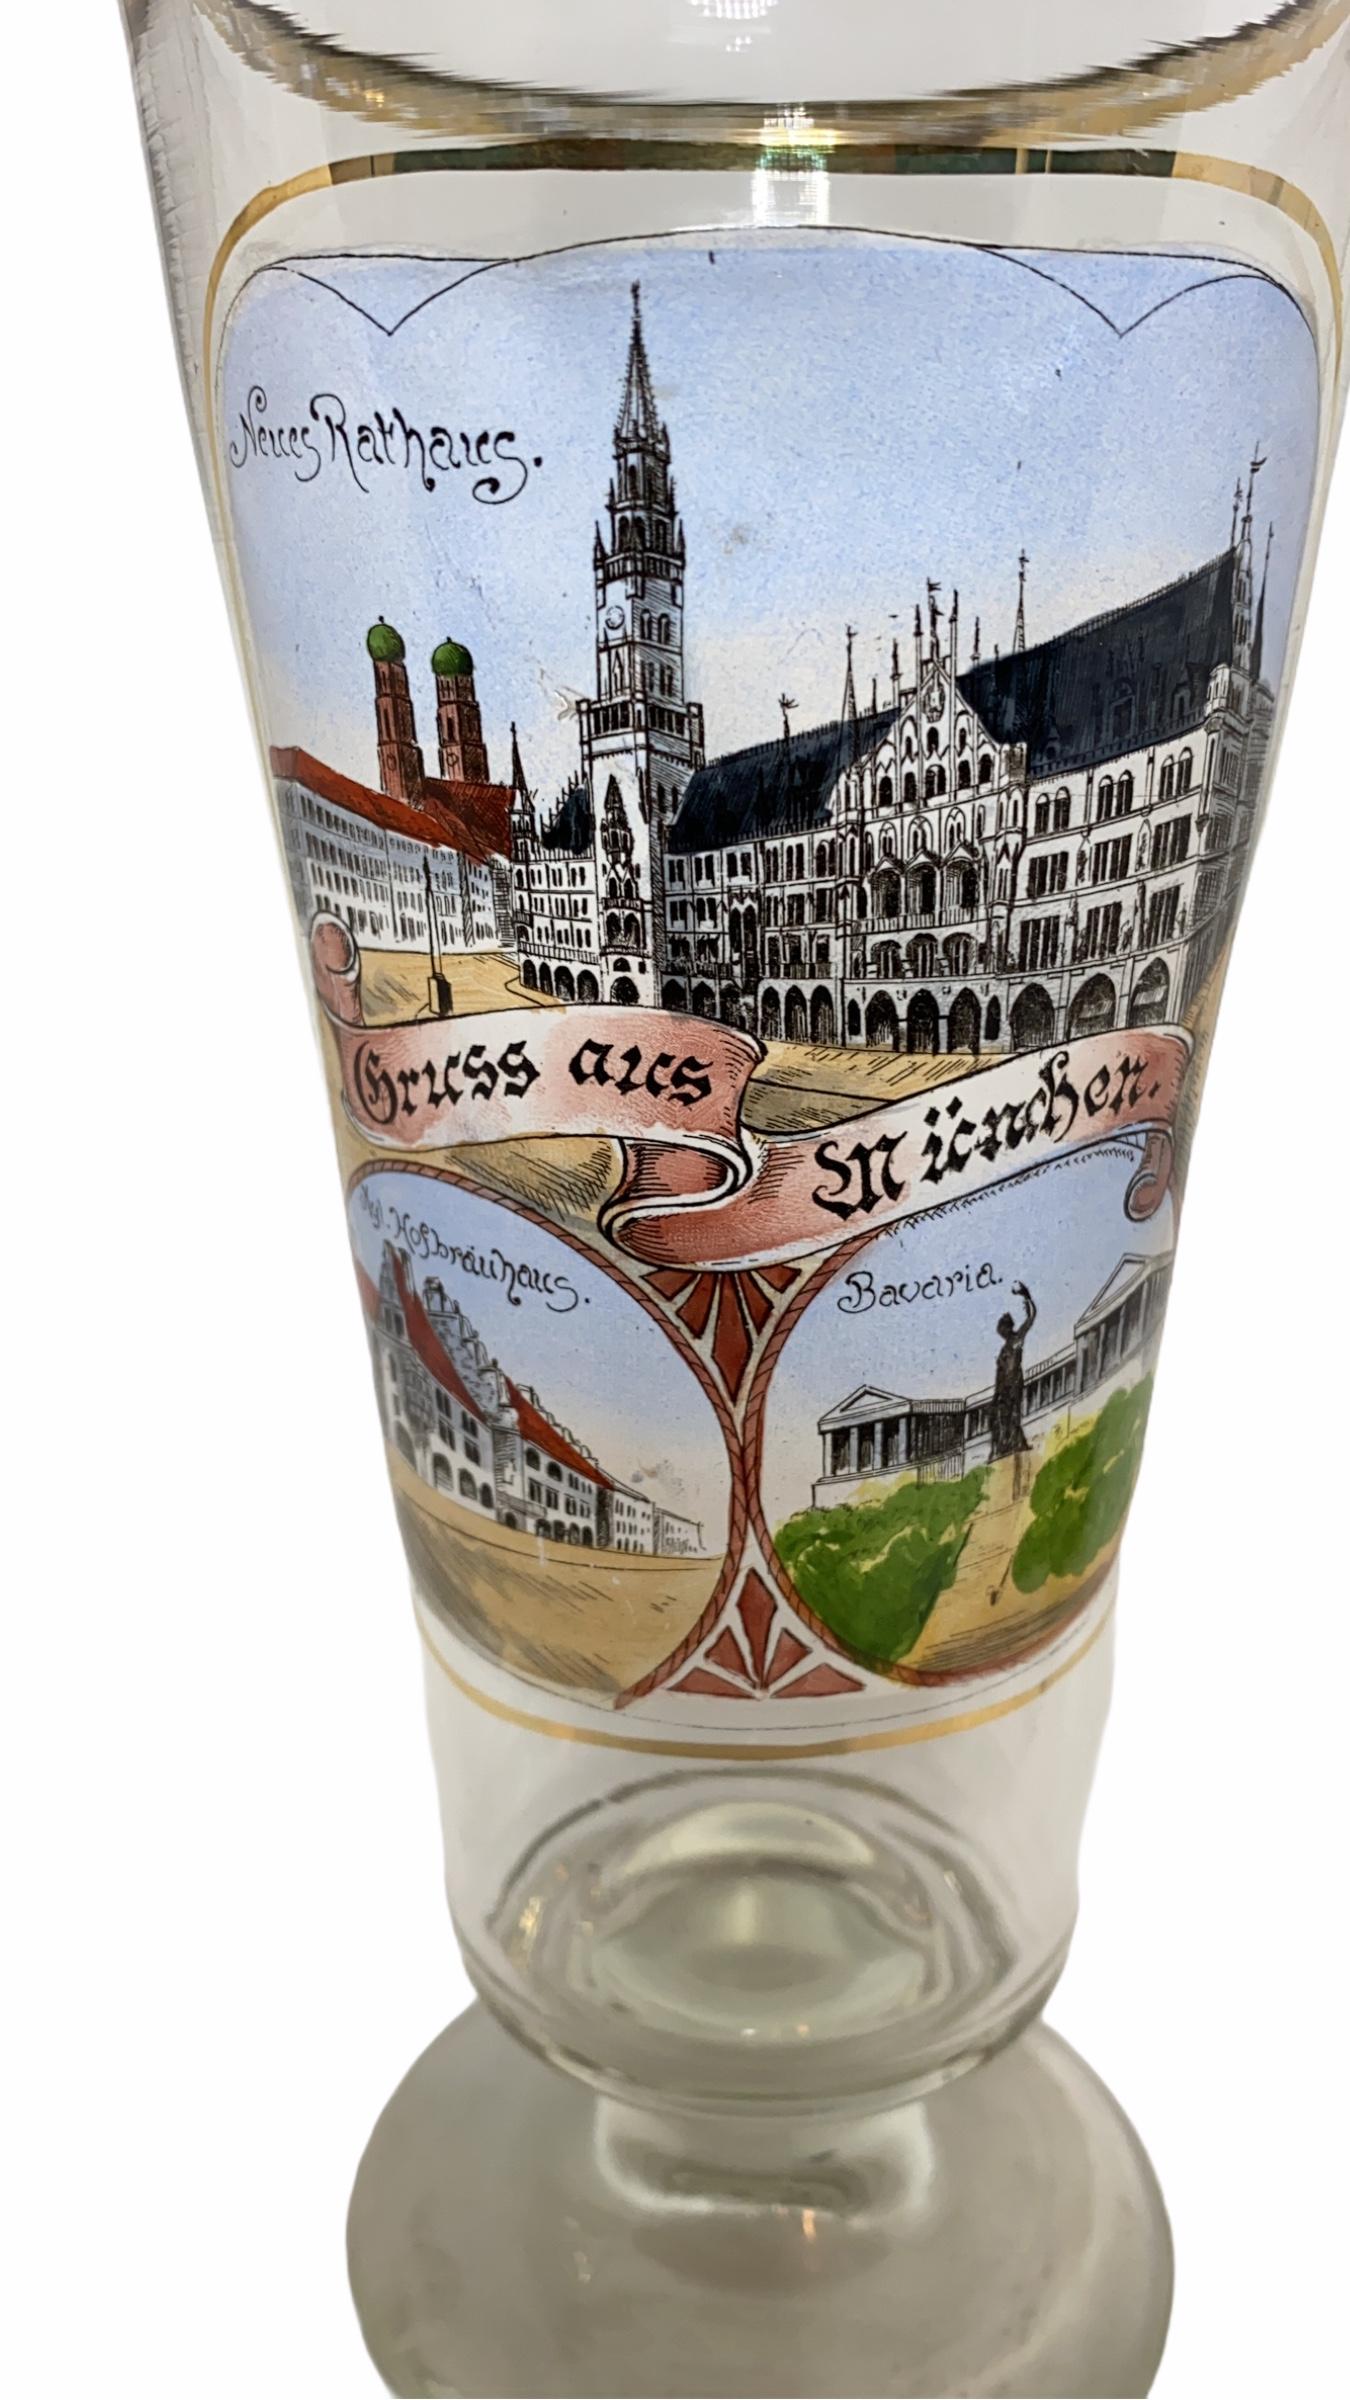 Ein wunderschönes Münchner Biertrinkglas mit Charakter. Sie wurde in Deutschland um 1900 hergestellt. Absolut wunderschönes Stück handbemalt und immer noch in gutem Zustand, ohne Schäden. Zeigt einige wichtige Gebäude und Orte in München. Es ist ein